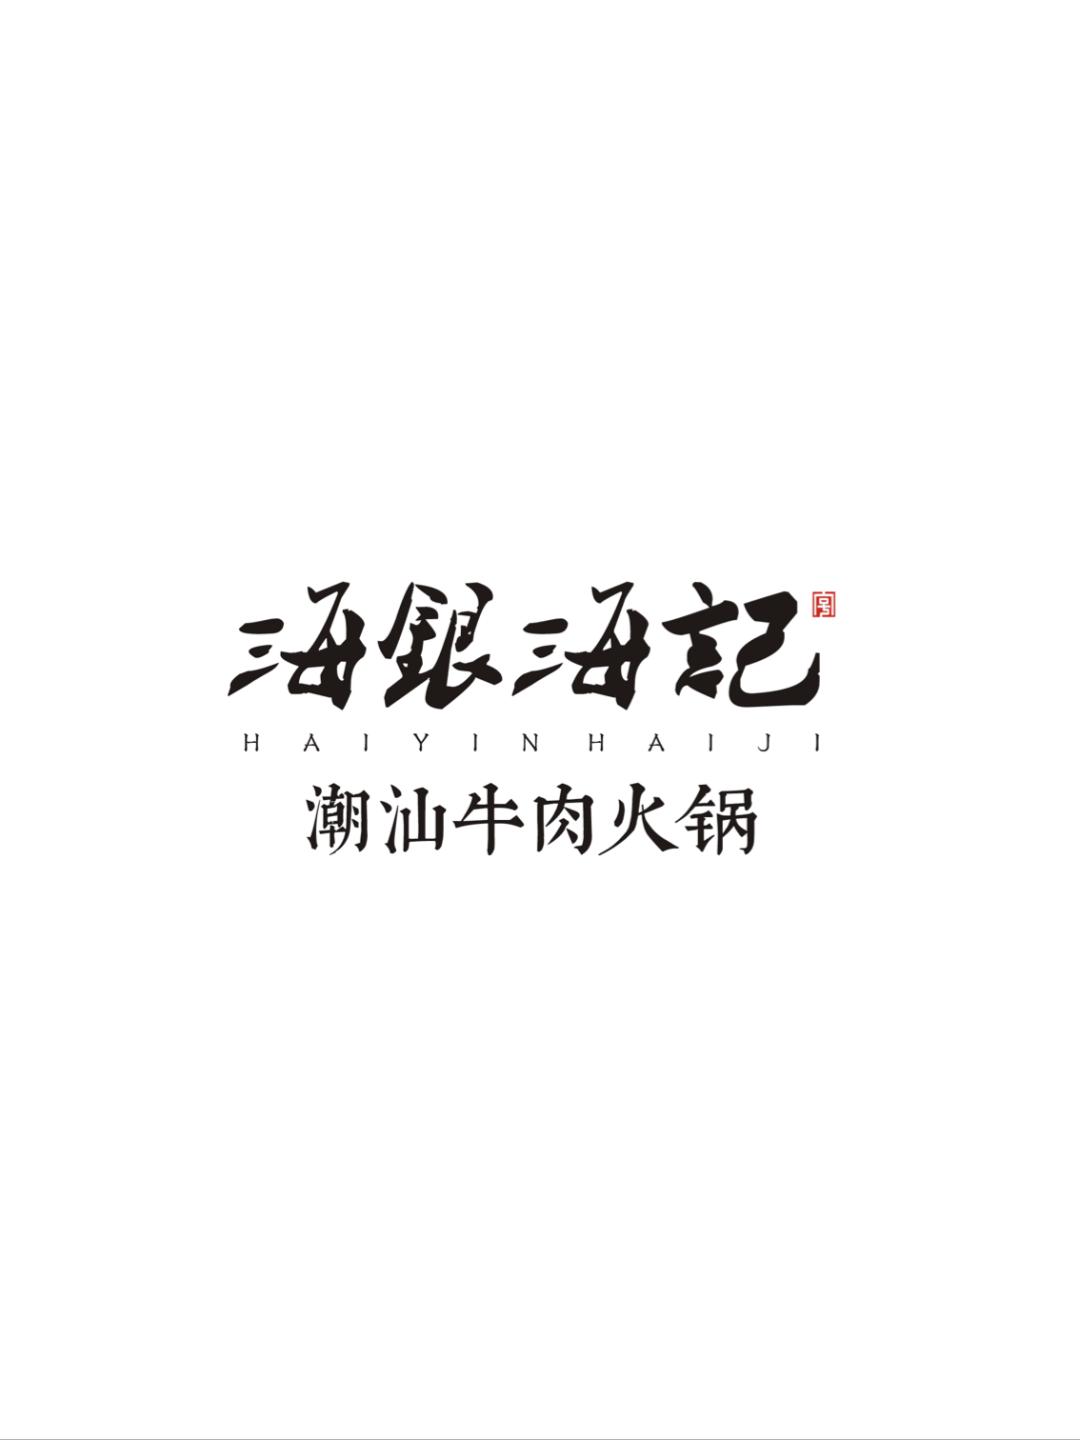 海银海记logo图片